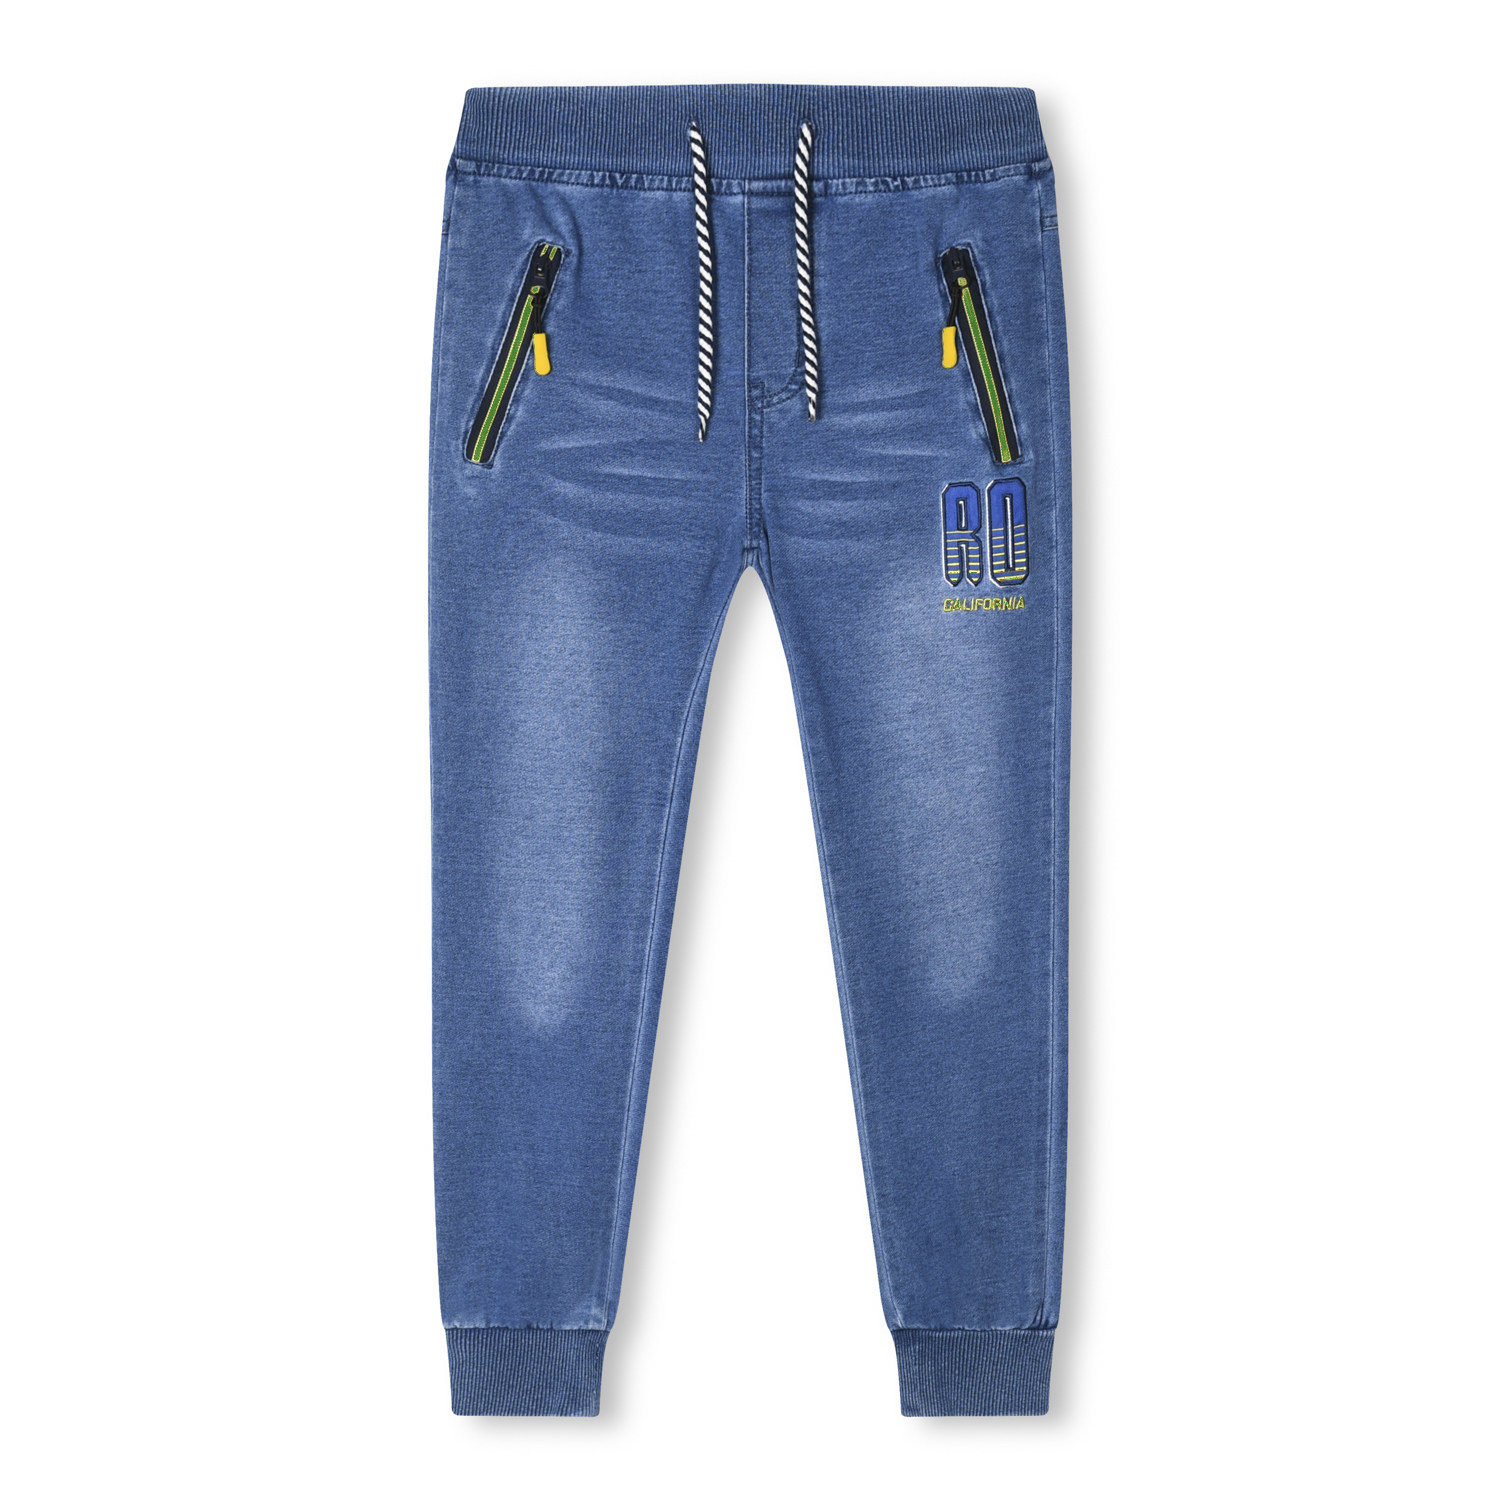 Chlapecké riflové kalhoty - KUGO FK0281, modrá/ zelená aplikace Barva: Modrá, Velikost: 116